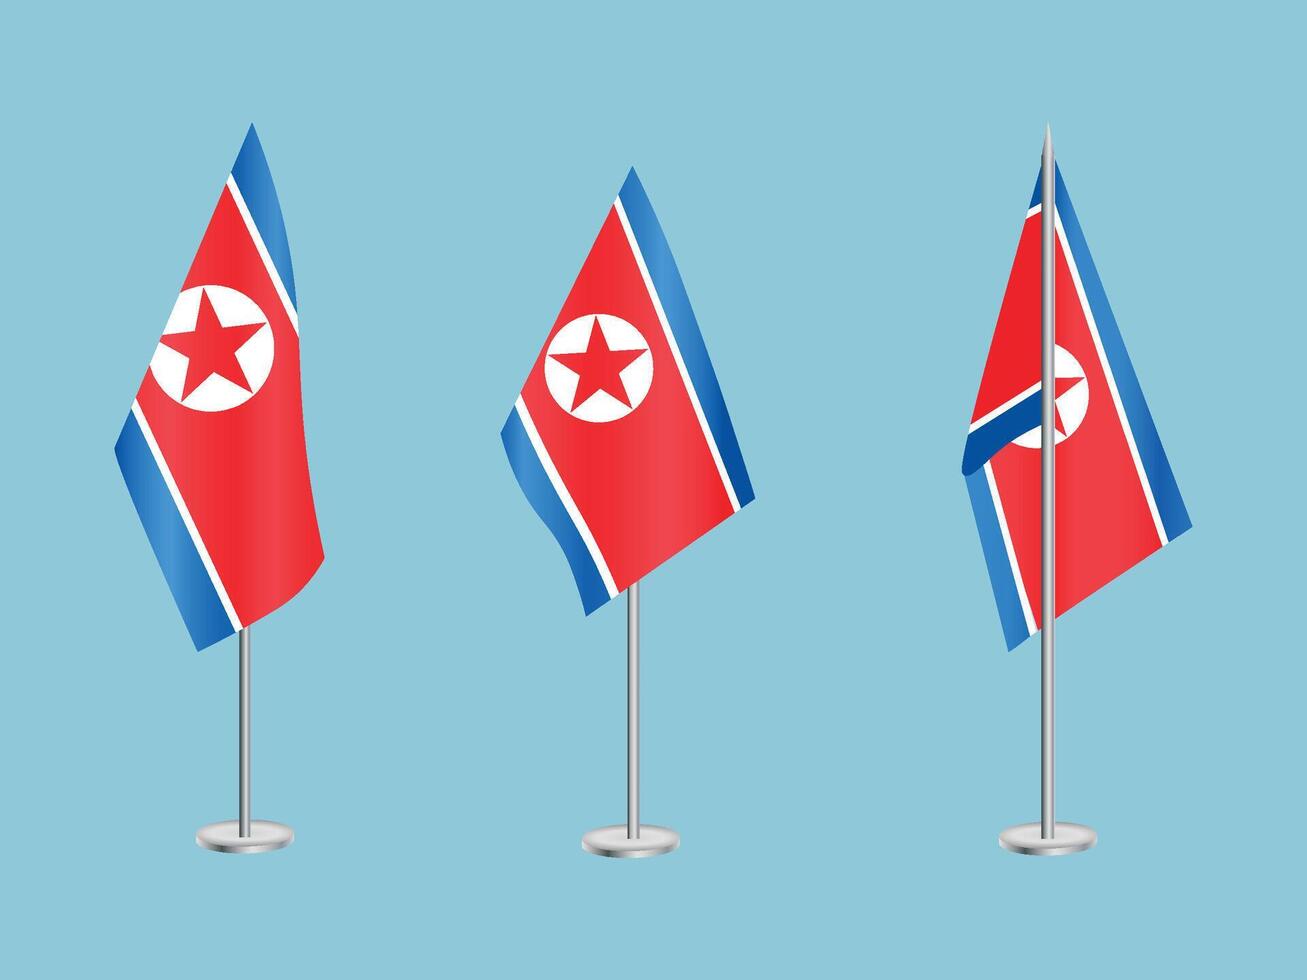 bandera de norte Corea con plata conjunto de polos de norte de corea nacional bandera vector